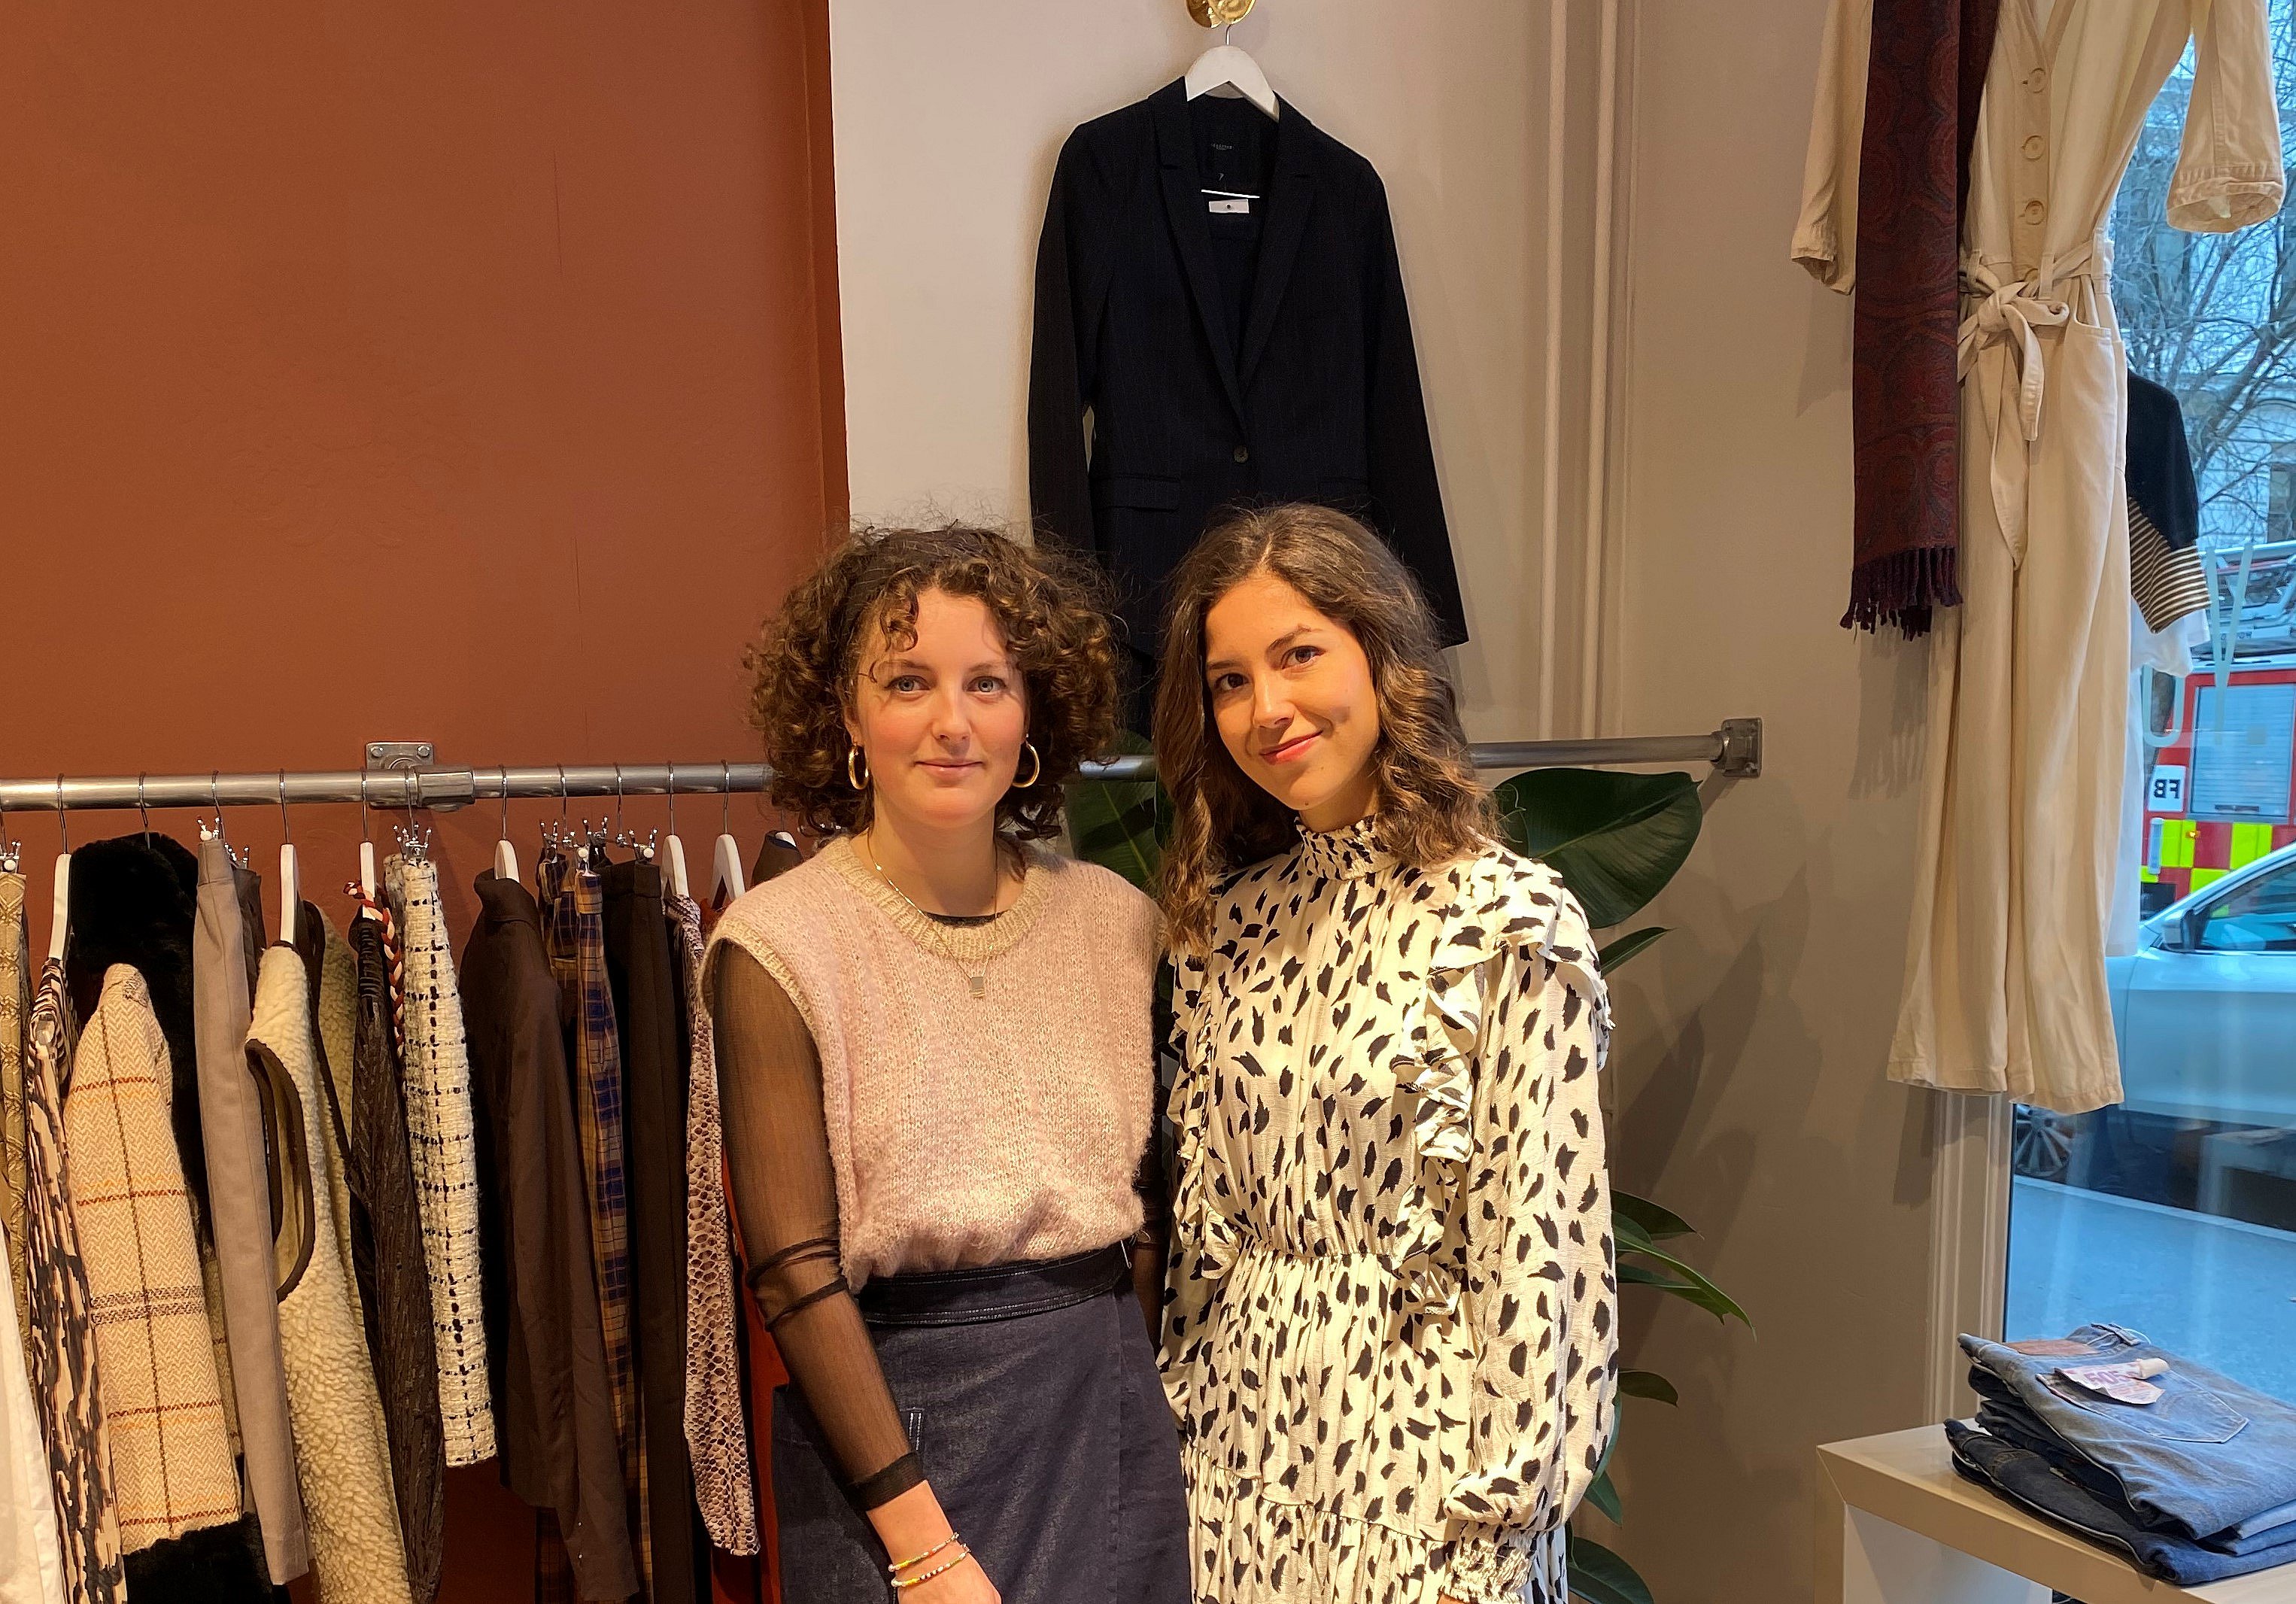 Forstad Australien Skinnende Anderledes butik åbner i København: Her kan du pante dit tøj | TV 2 Lorry